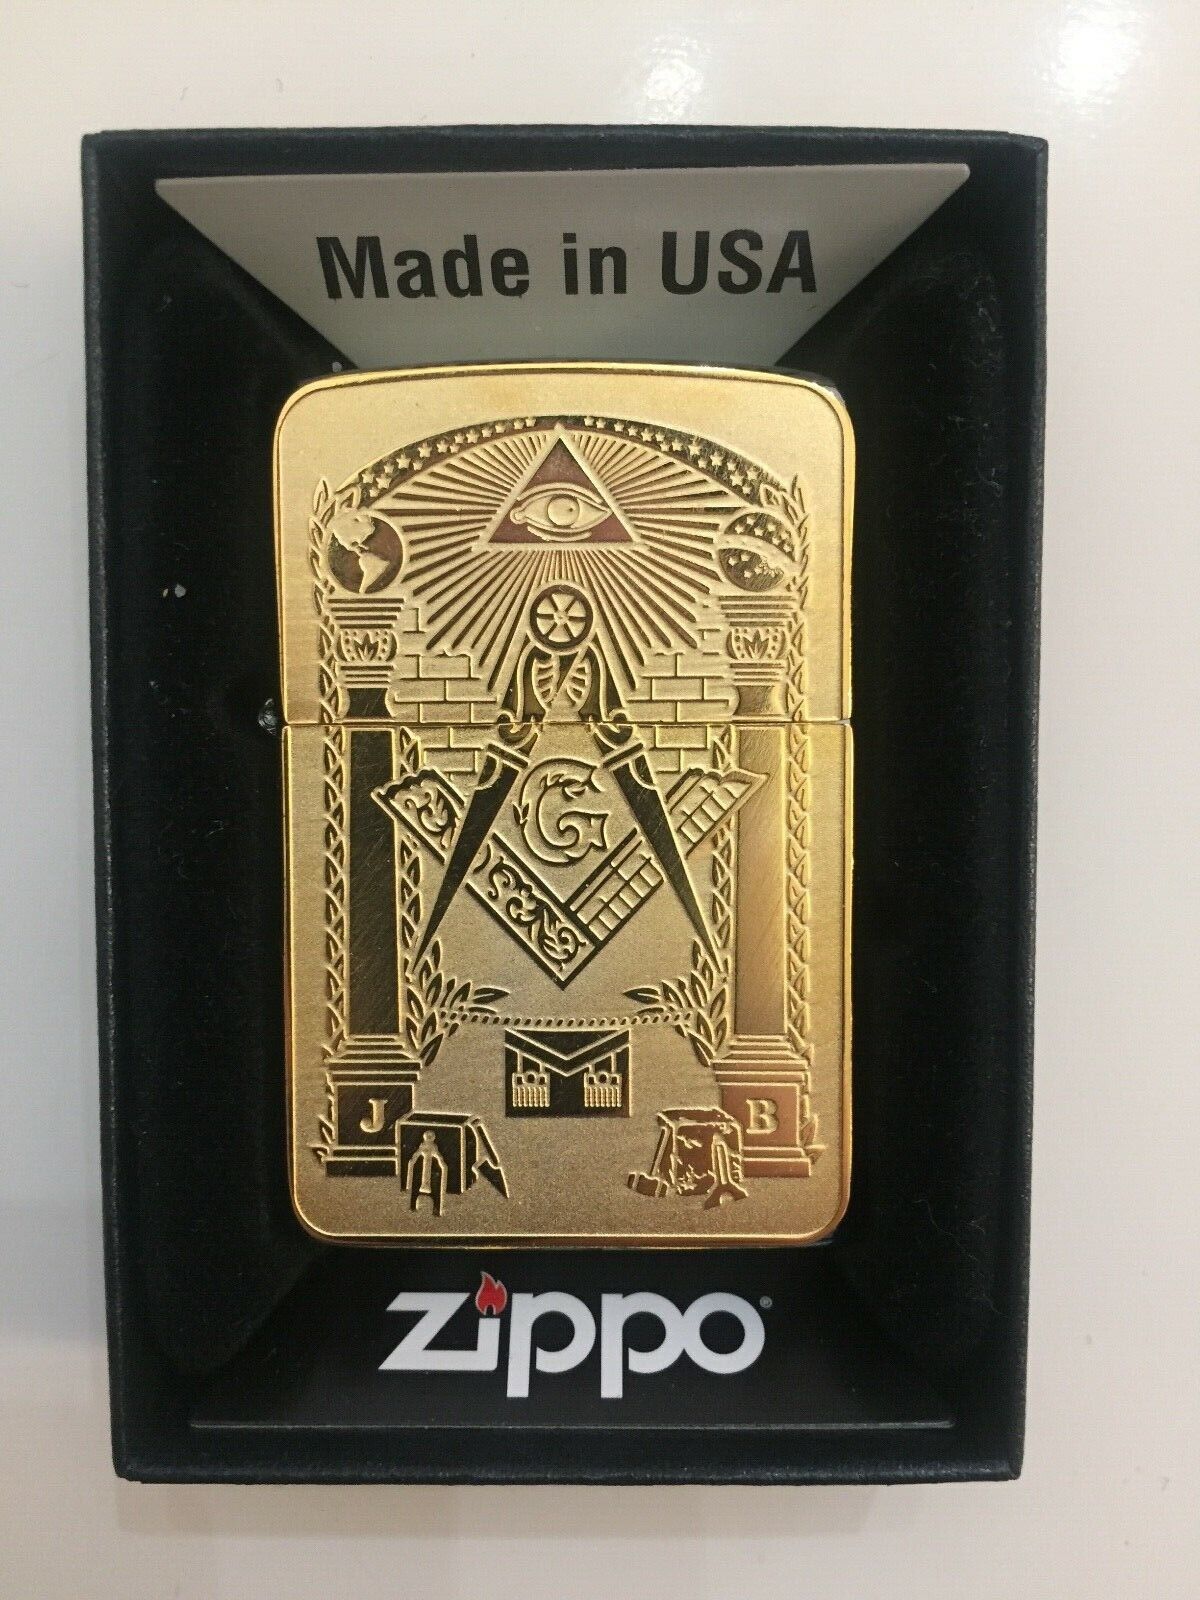 Masonic Zippo Lighter brushed Chrome Free Masons Master gift Gold plated